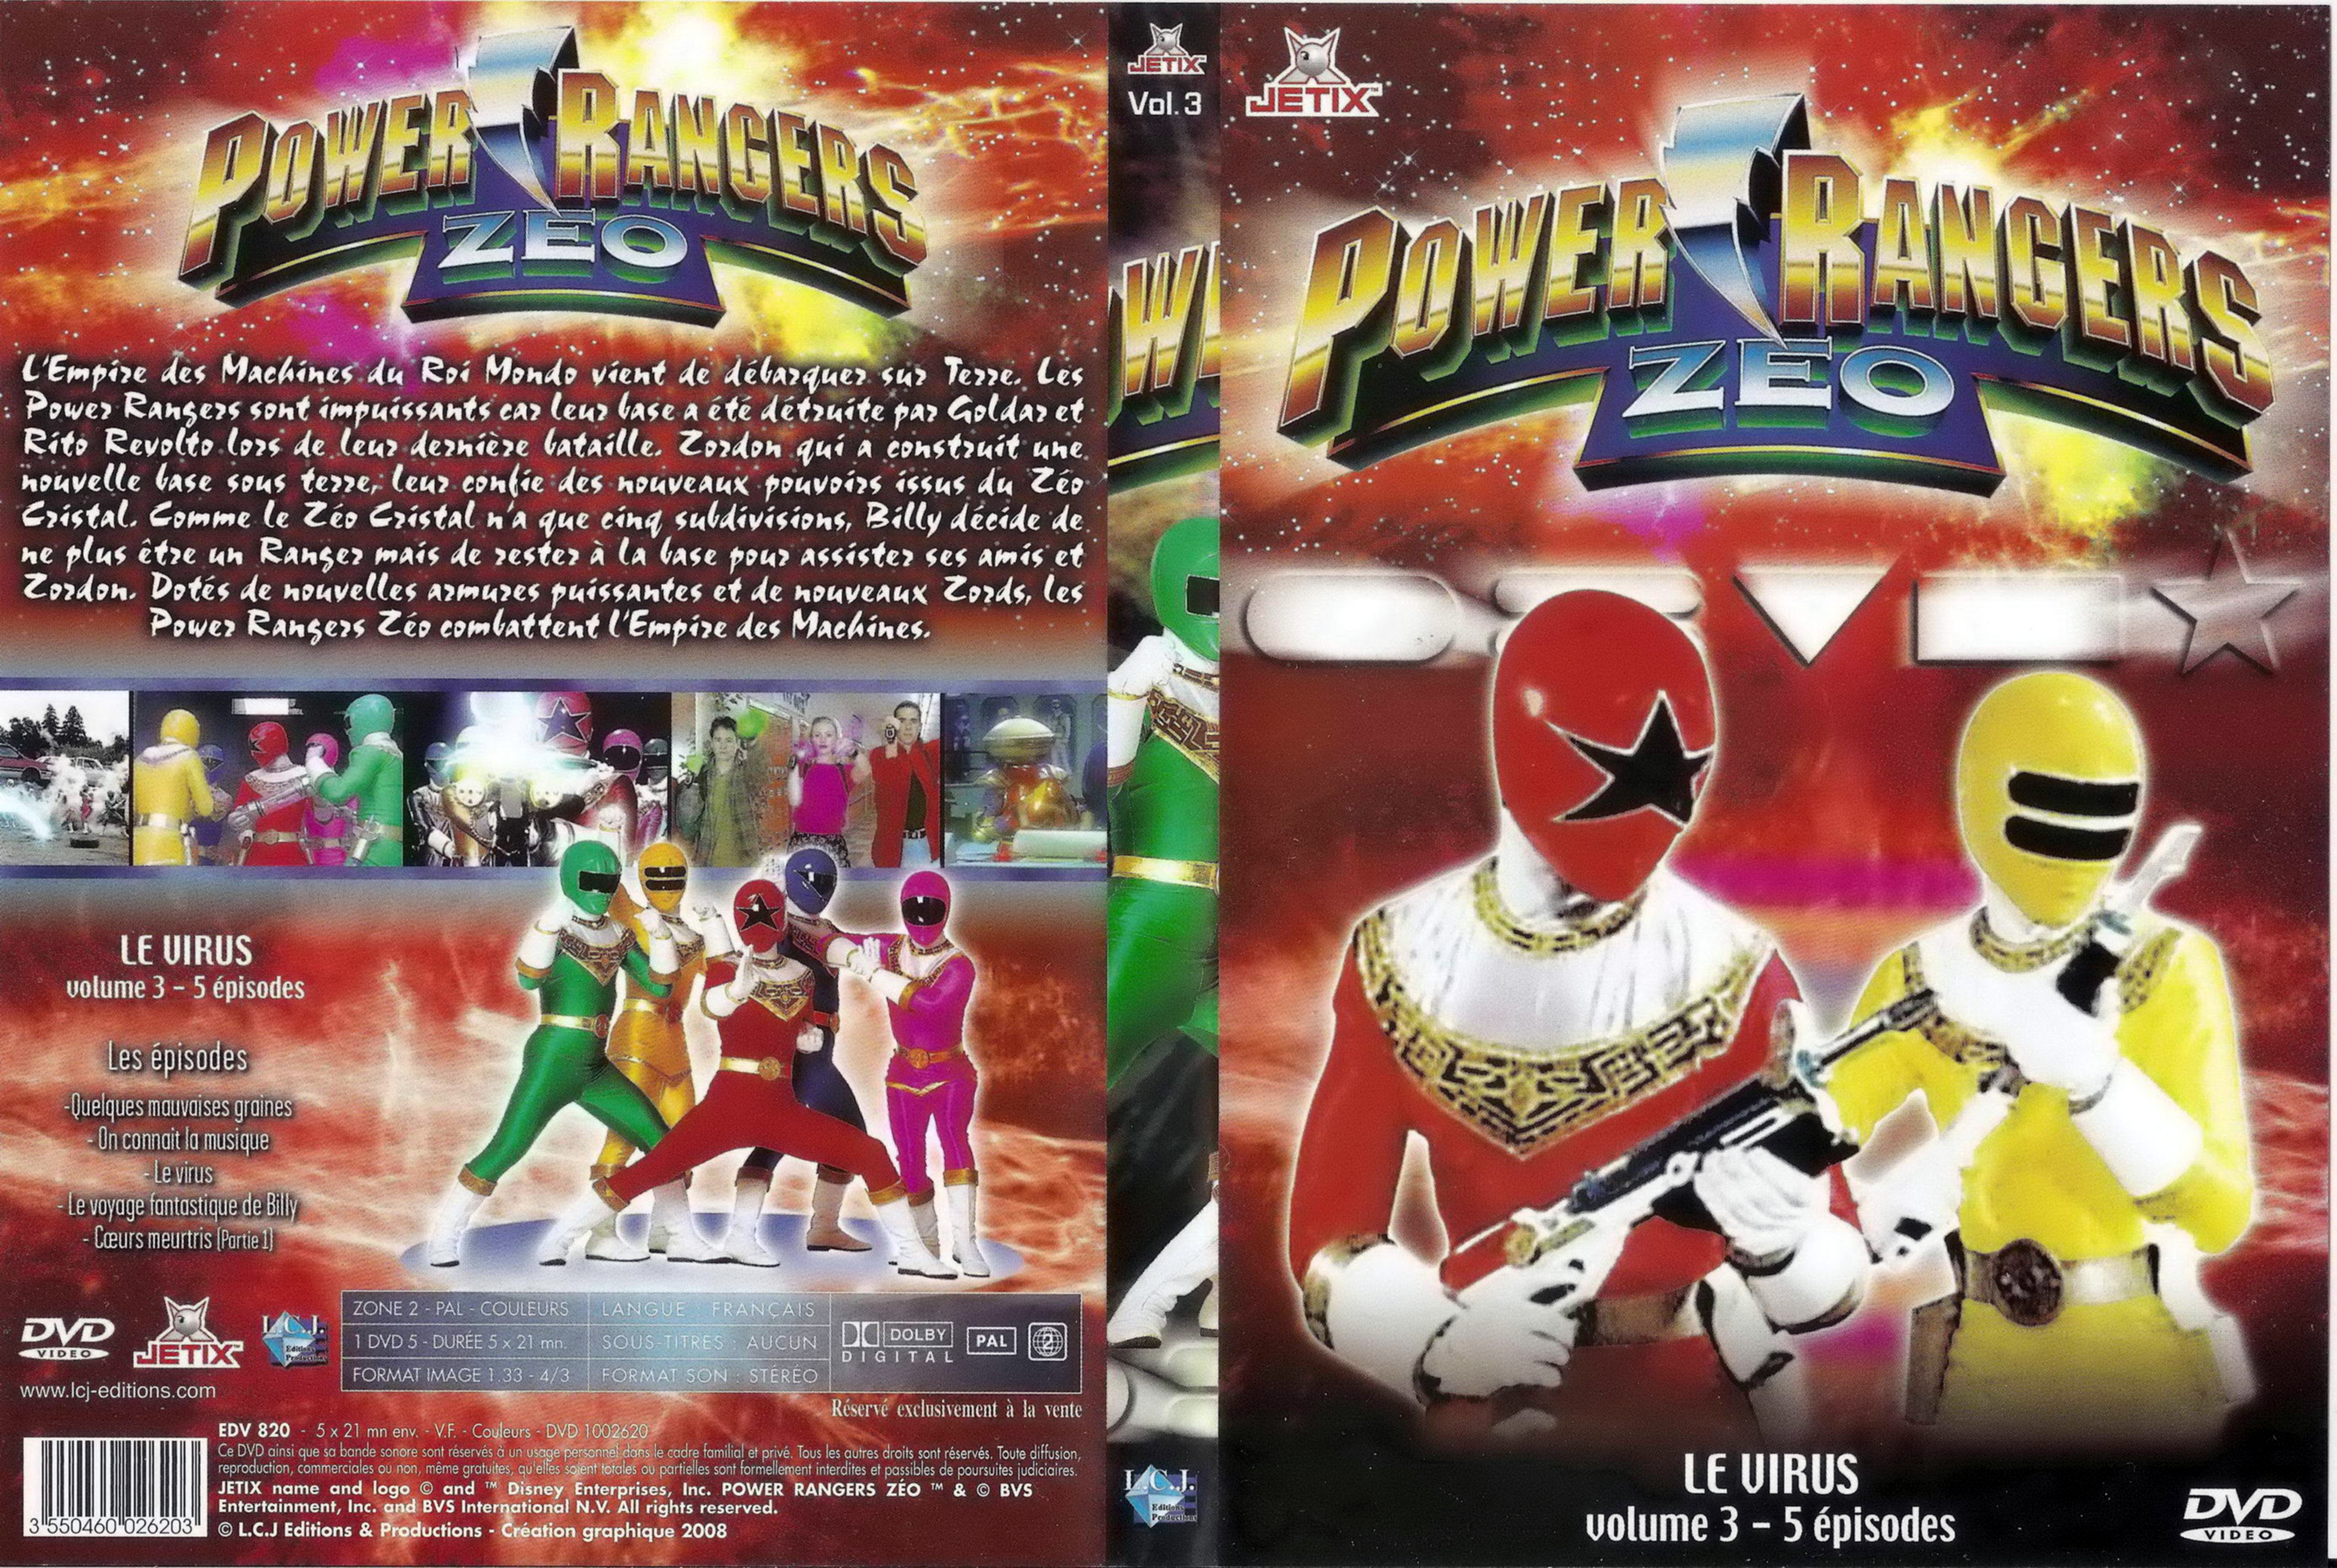 Jaquette DVD Power rangers zeo vol 3